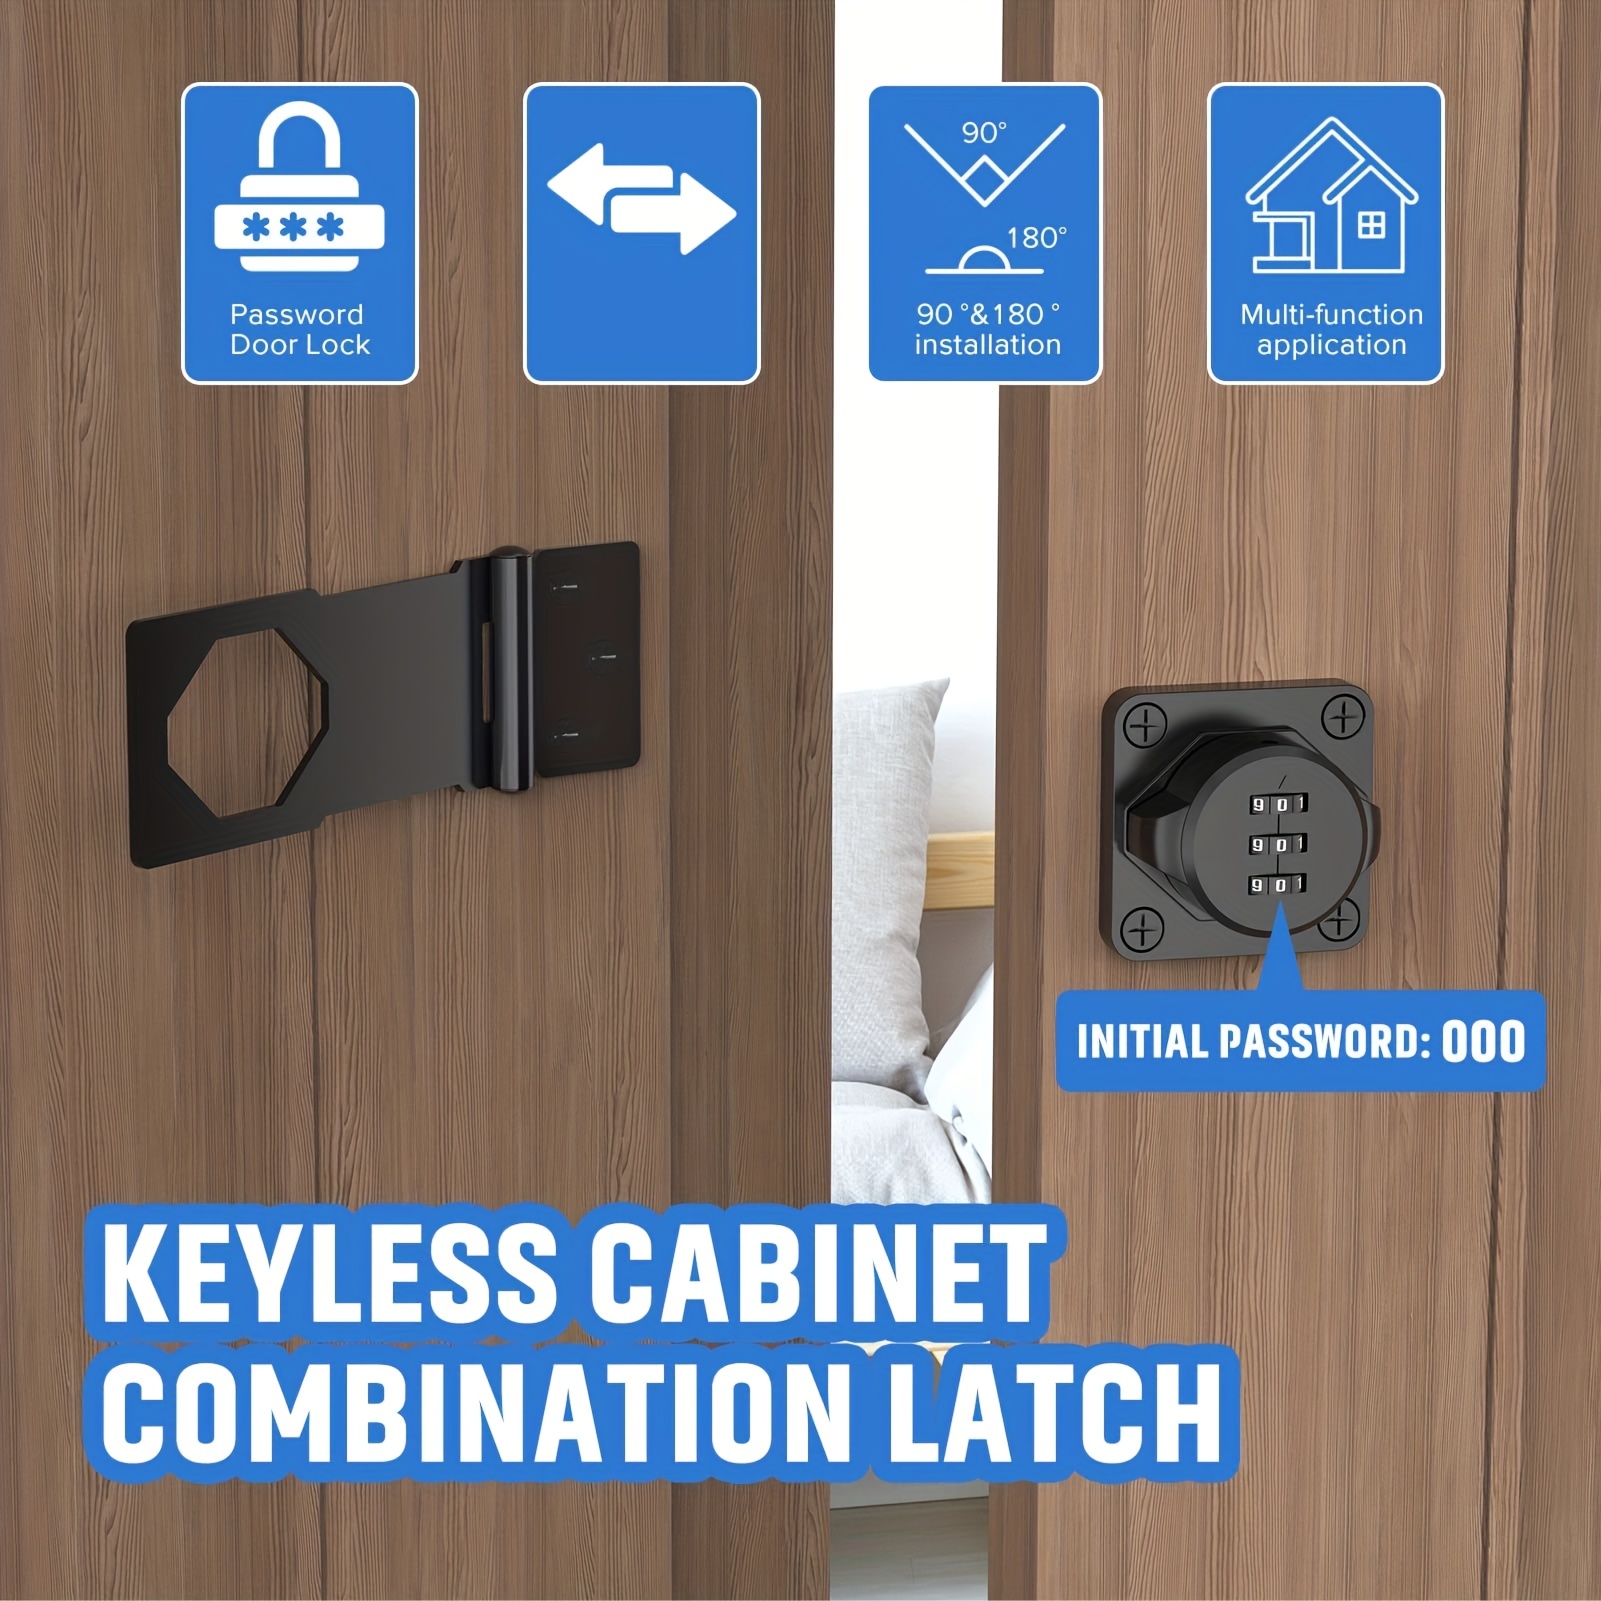 Key Cabinet - 4 Wheel Combo Lock, 240 Key - ULINE - H-7765